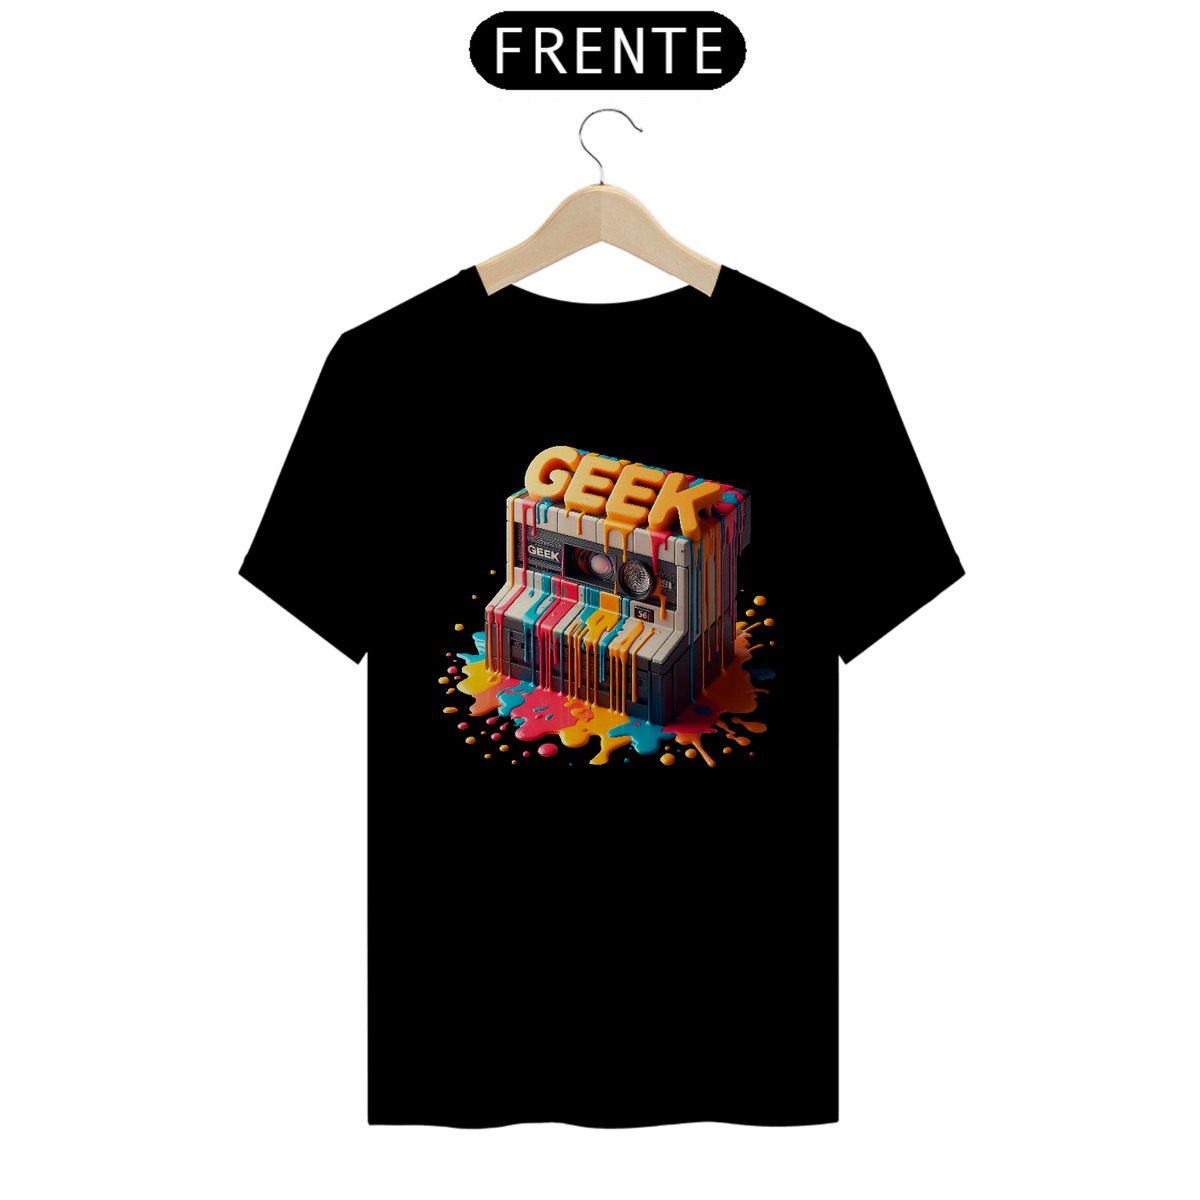 Nome do produto: Camiseta Music Rêtro